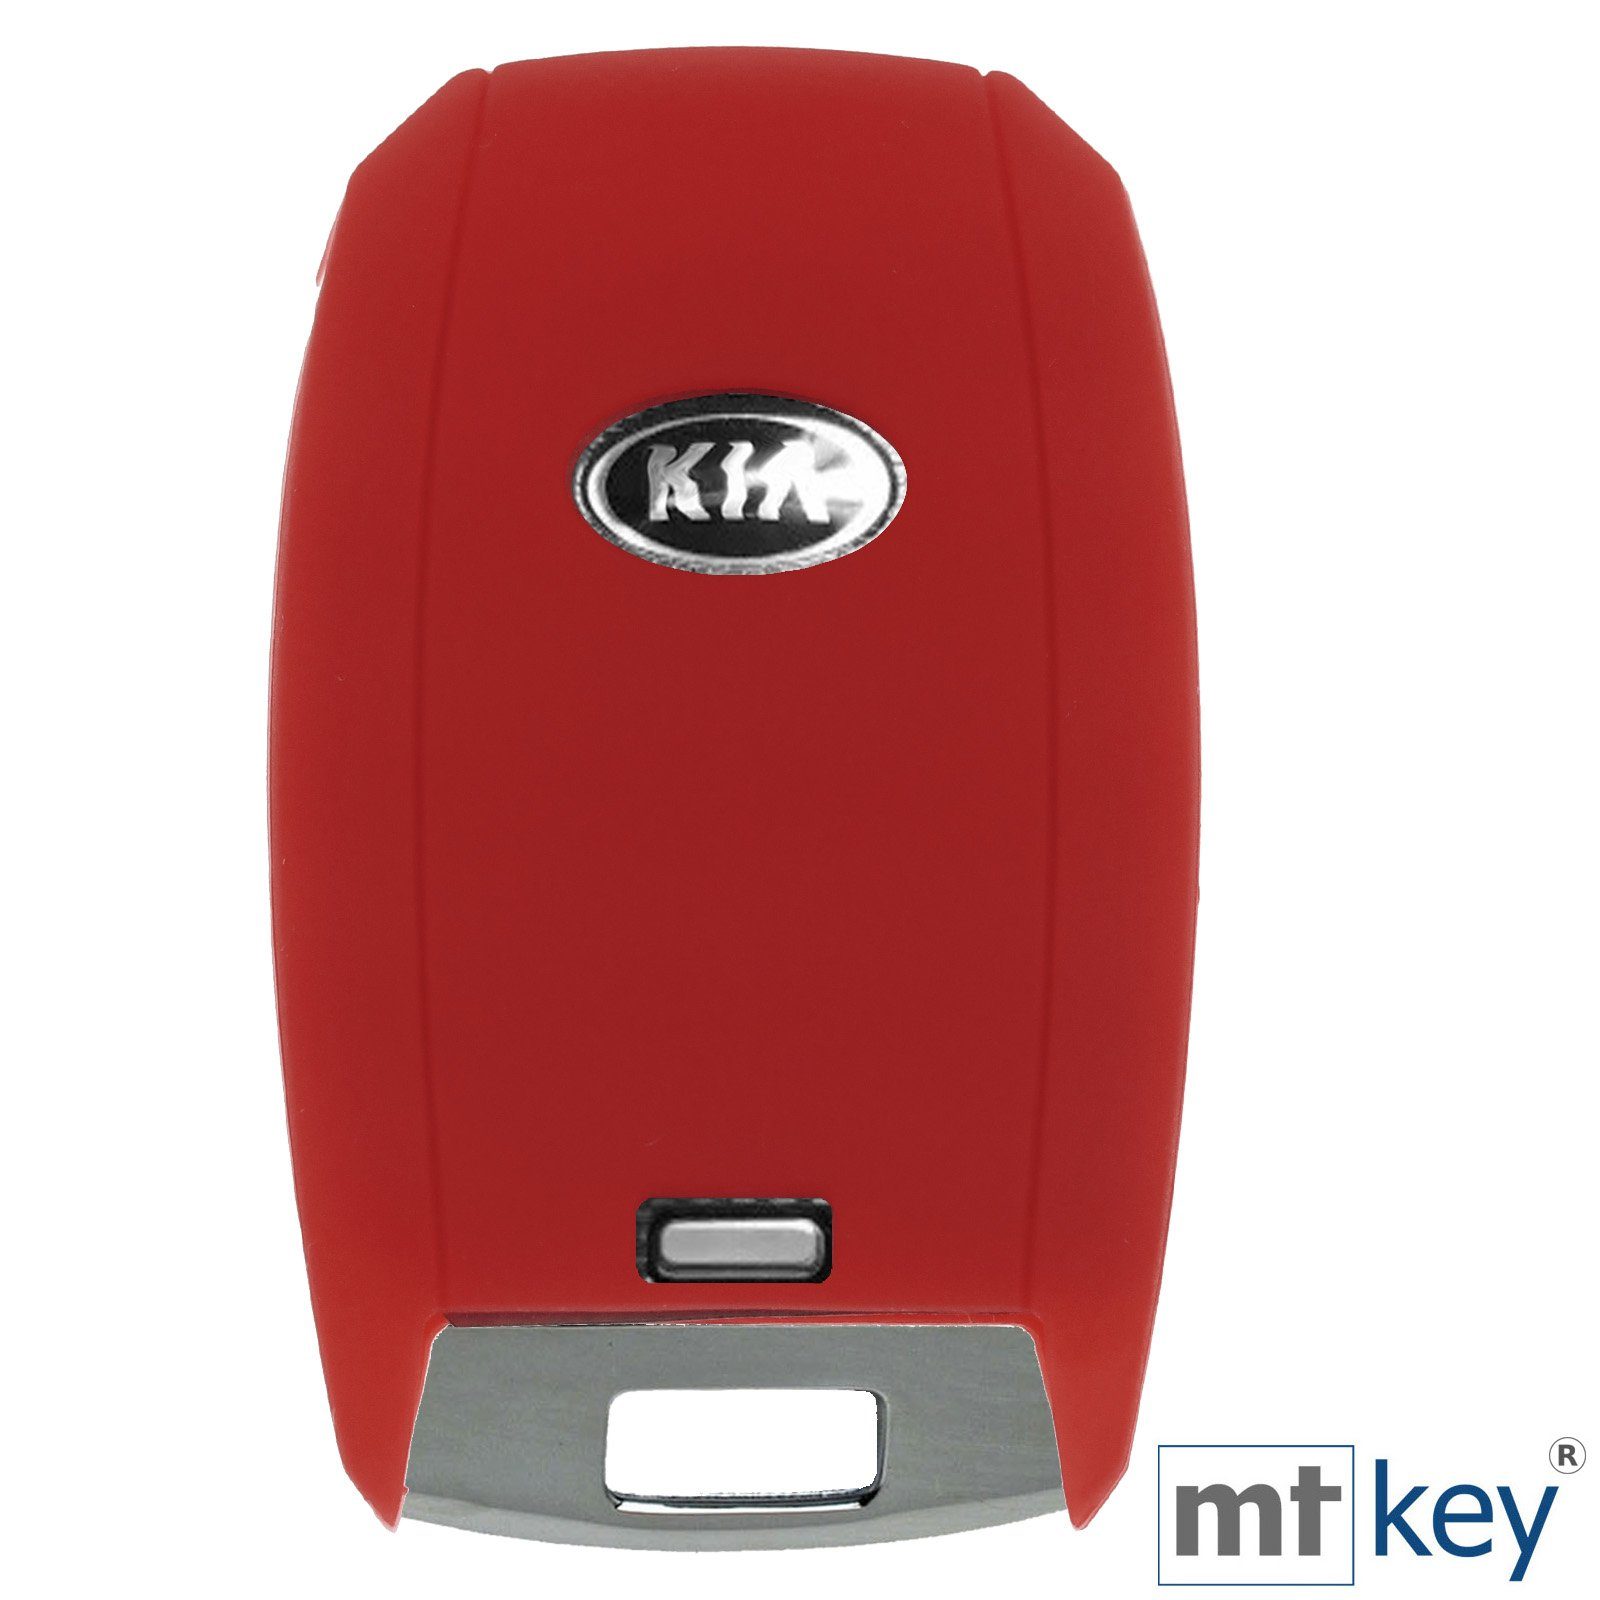 mt-key Schlüsseltasche Ceed Tasten Rot, Rio Picantio 3 Schutzhülle Sportage Stonic Softcase KIA für Silikon Autoschlüssel KEYLESS Soul